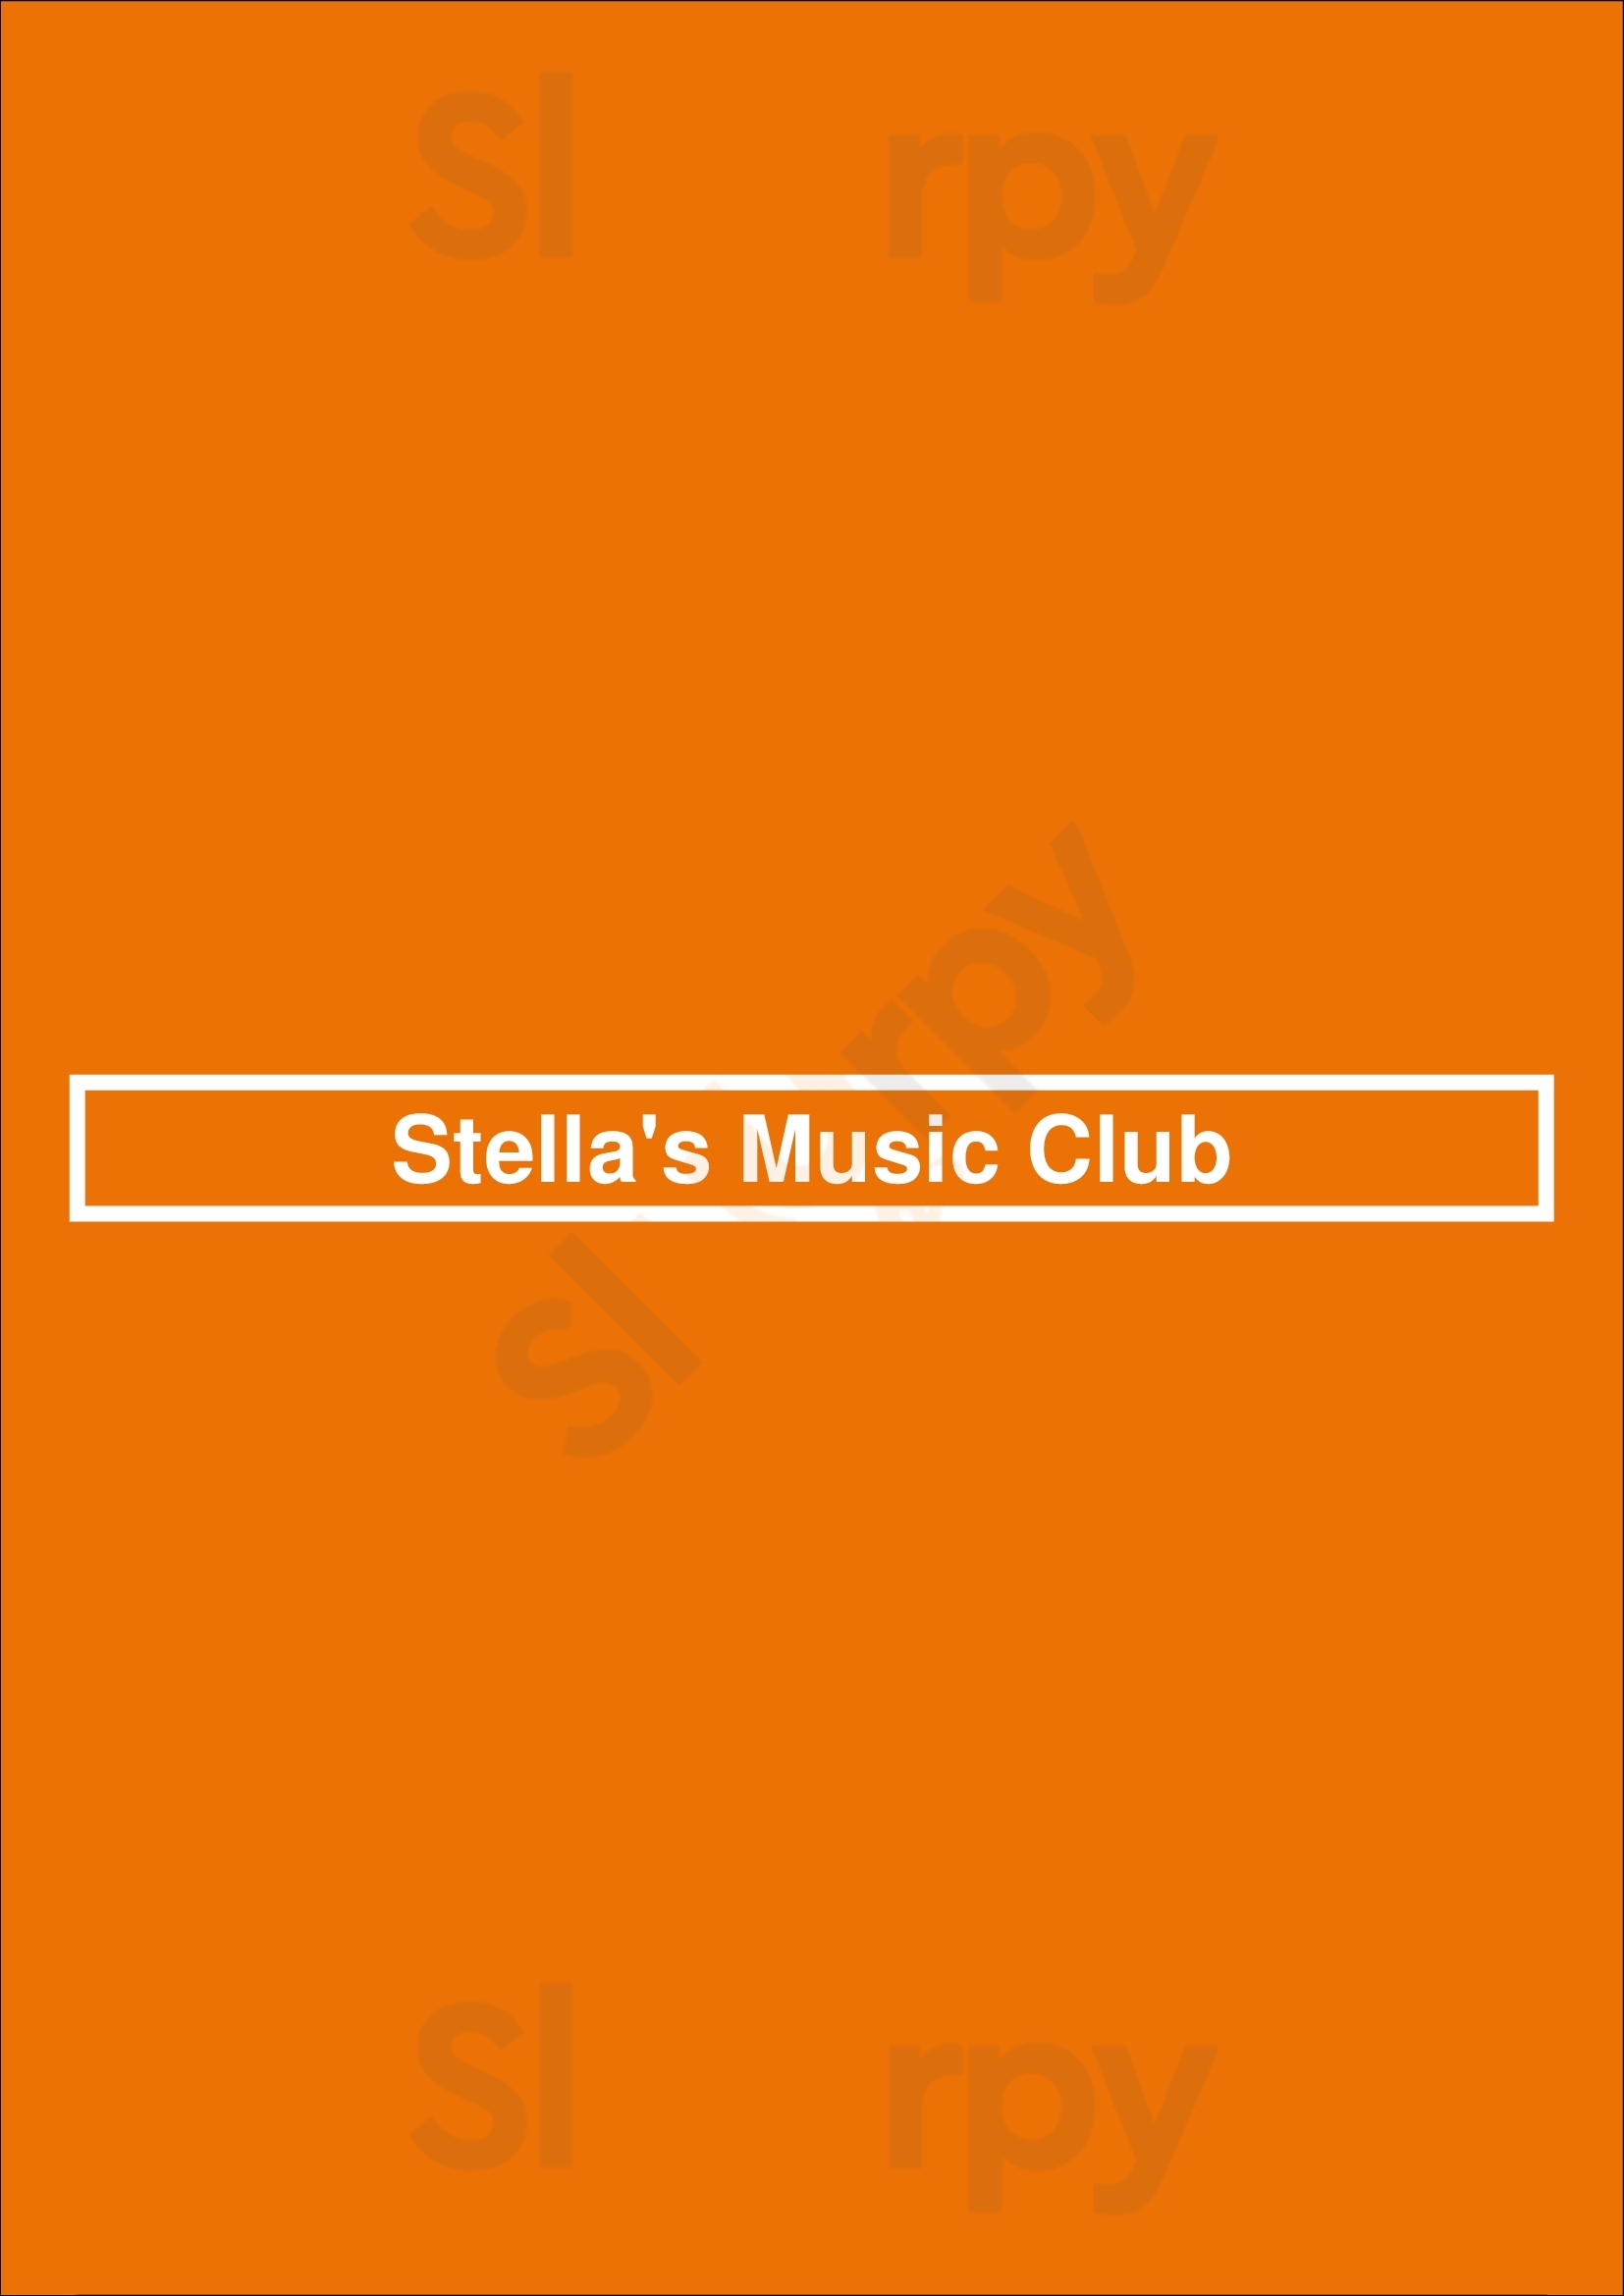 Stella's Music Club Cleveland Menu - 1